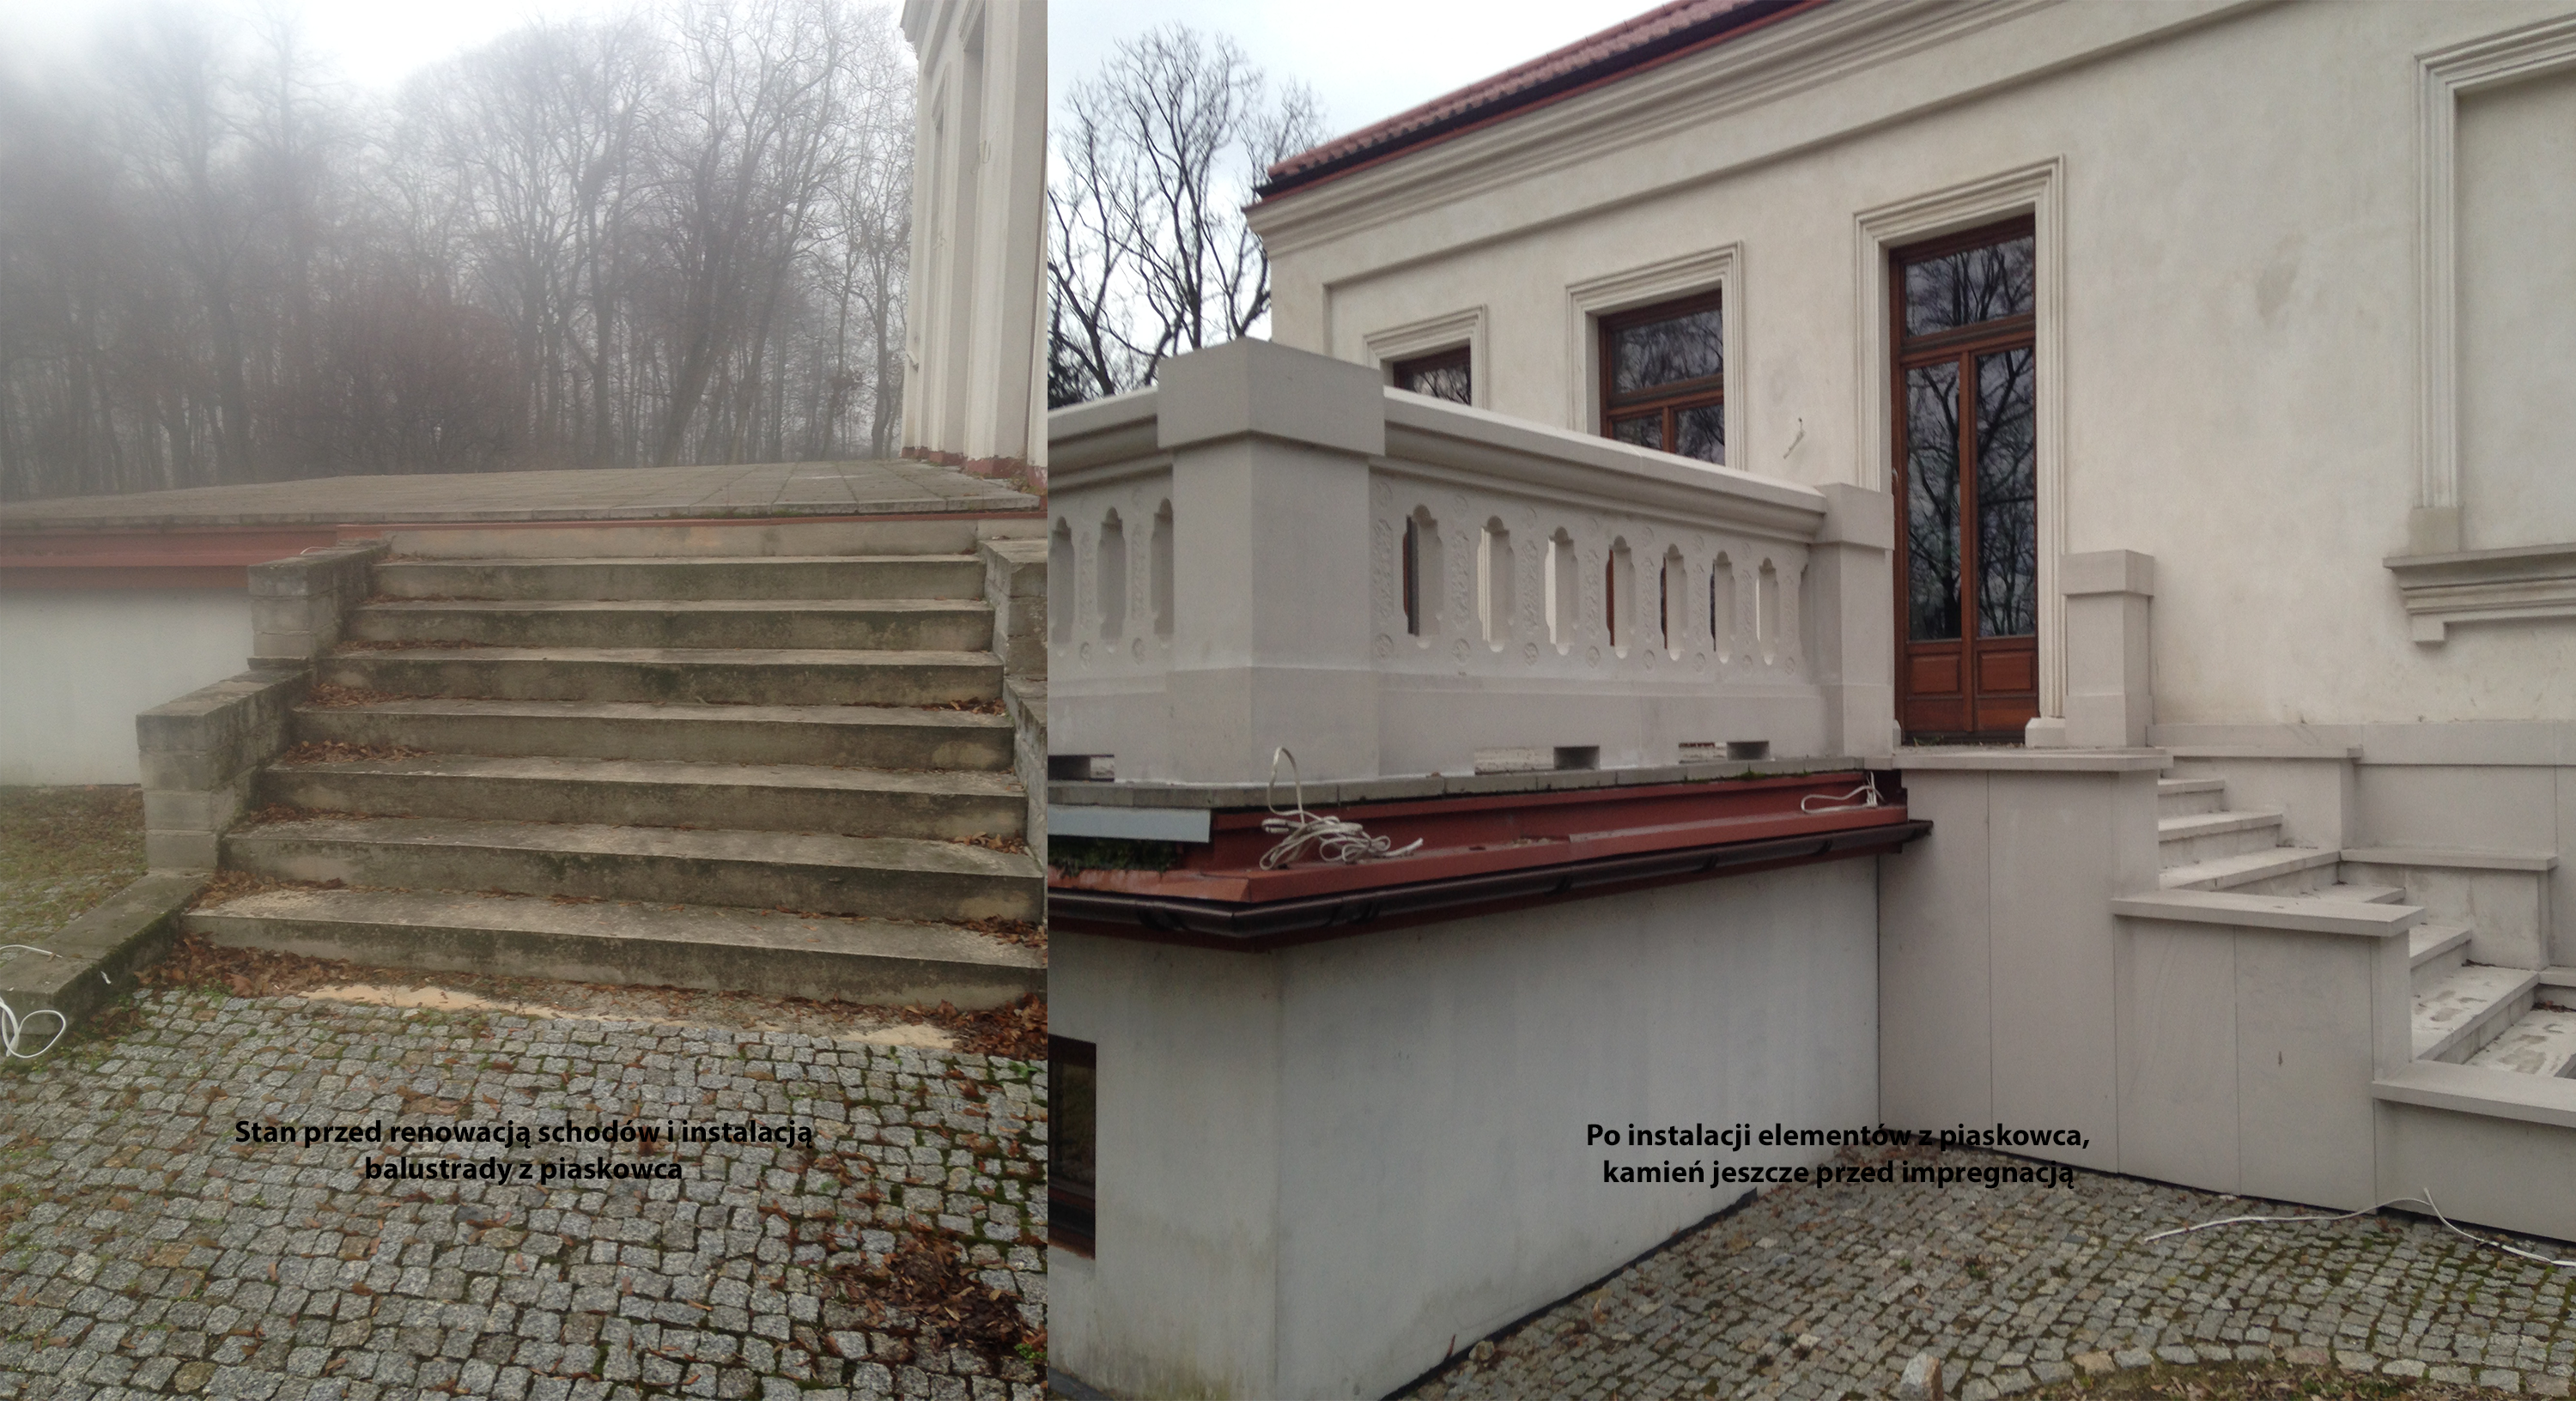 KAMBO renowacja i kompleksowe prace kamieniarskie elewacja schody balustrady detale kamienne